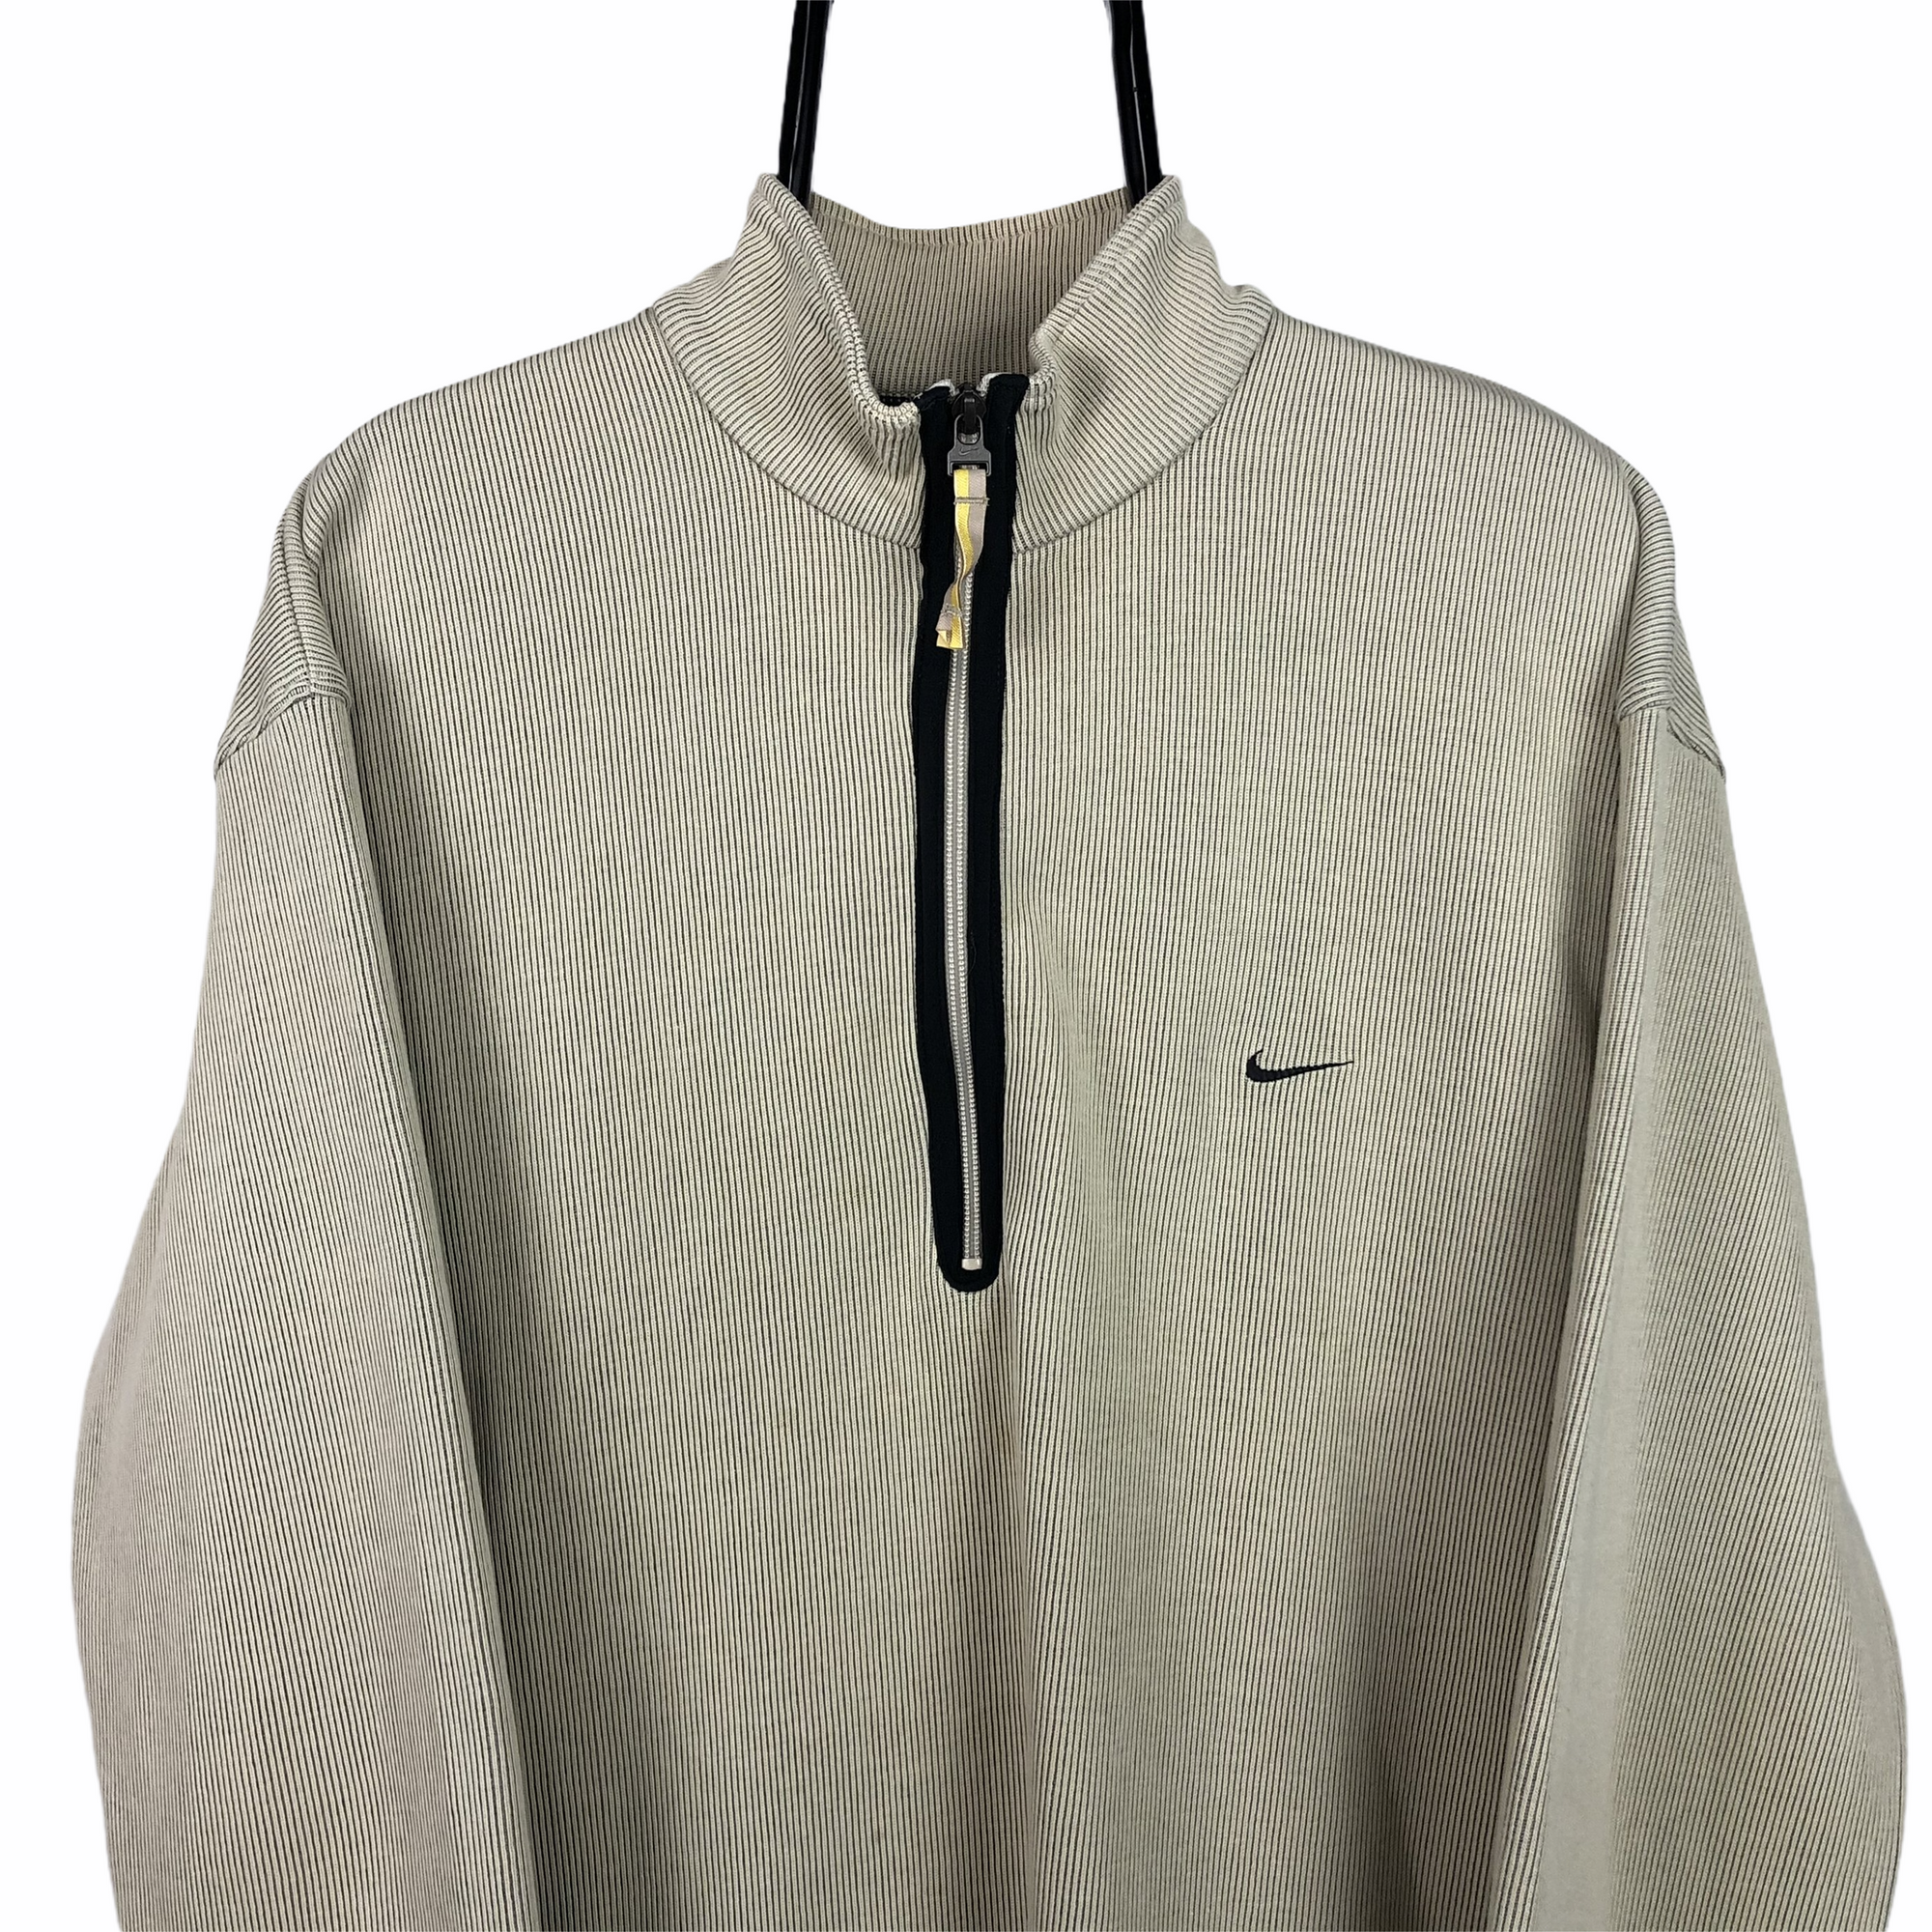 Vintage Nike 1/4 Zip Corduroy Sweatshirt in Beige - Men's XL/Women's XXL